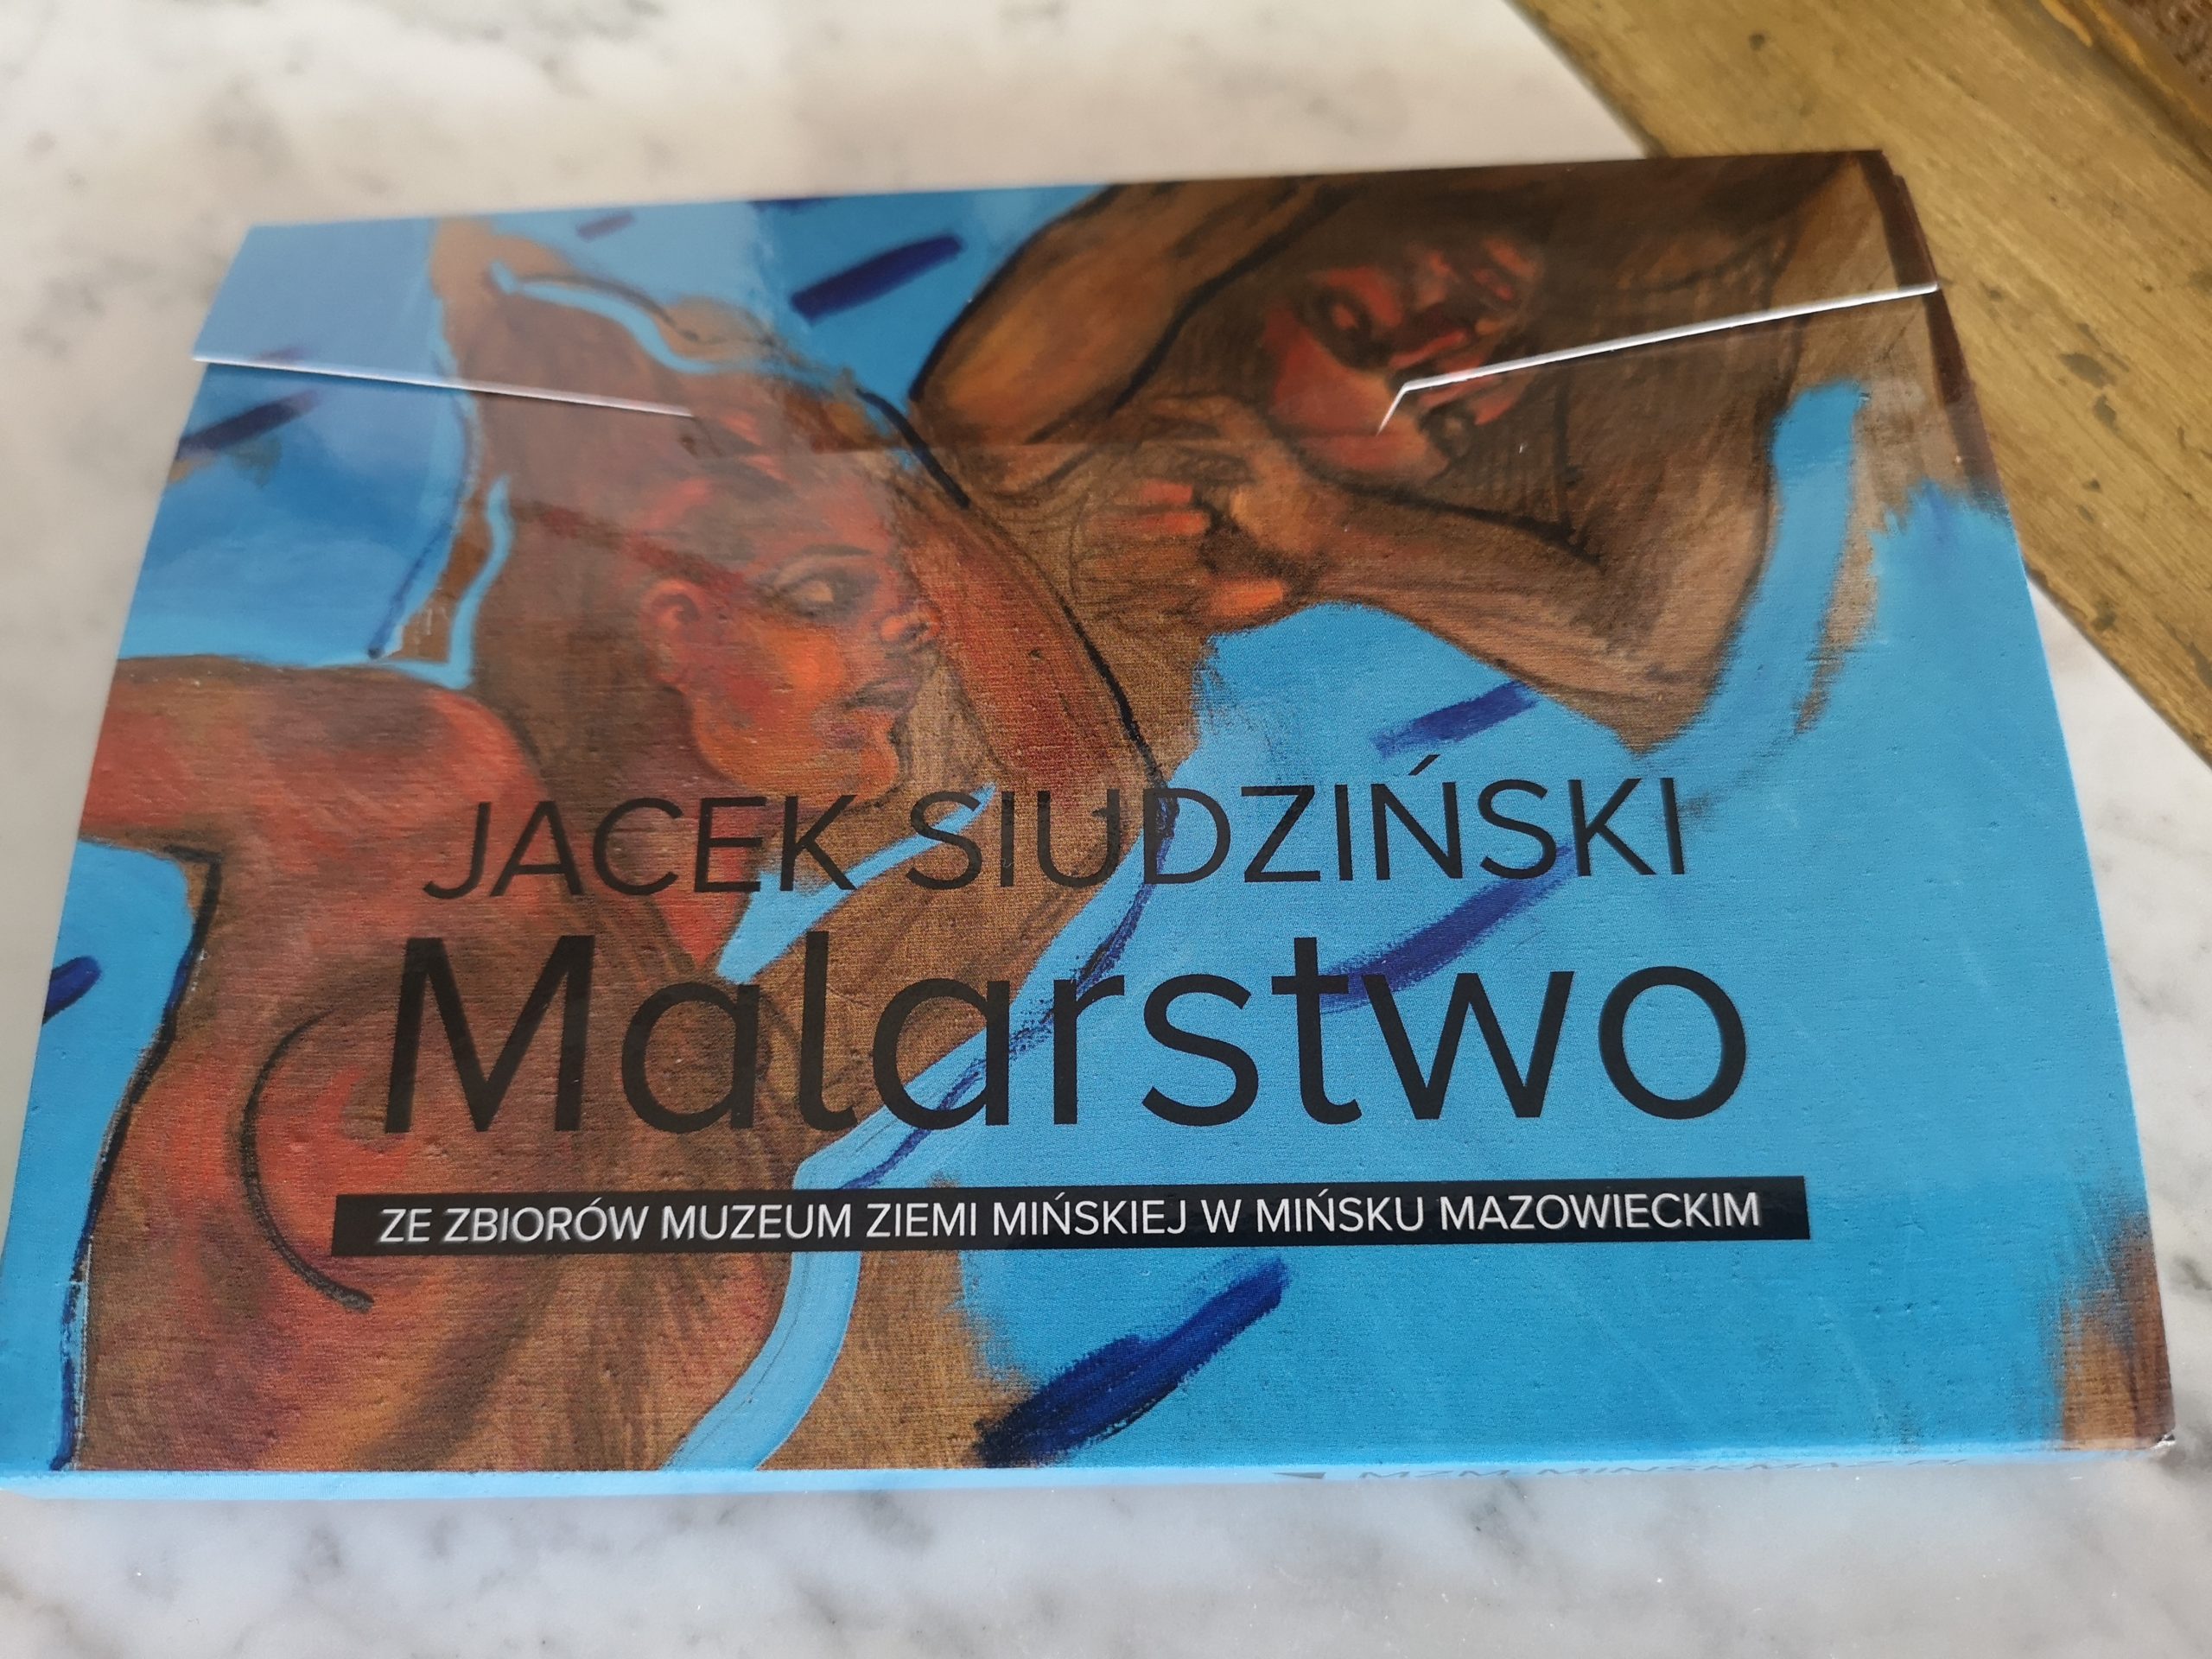 Pocztówki z malarstwem Jacka Siudzińskiego w etui